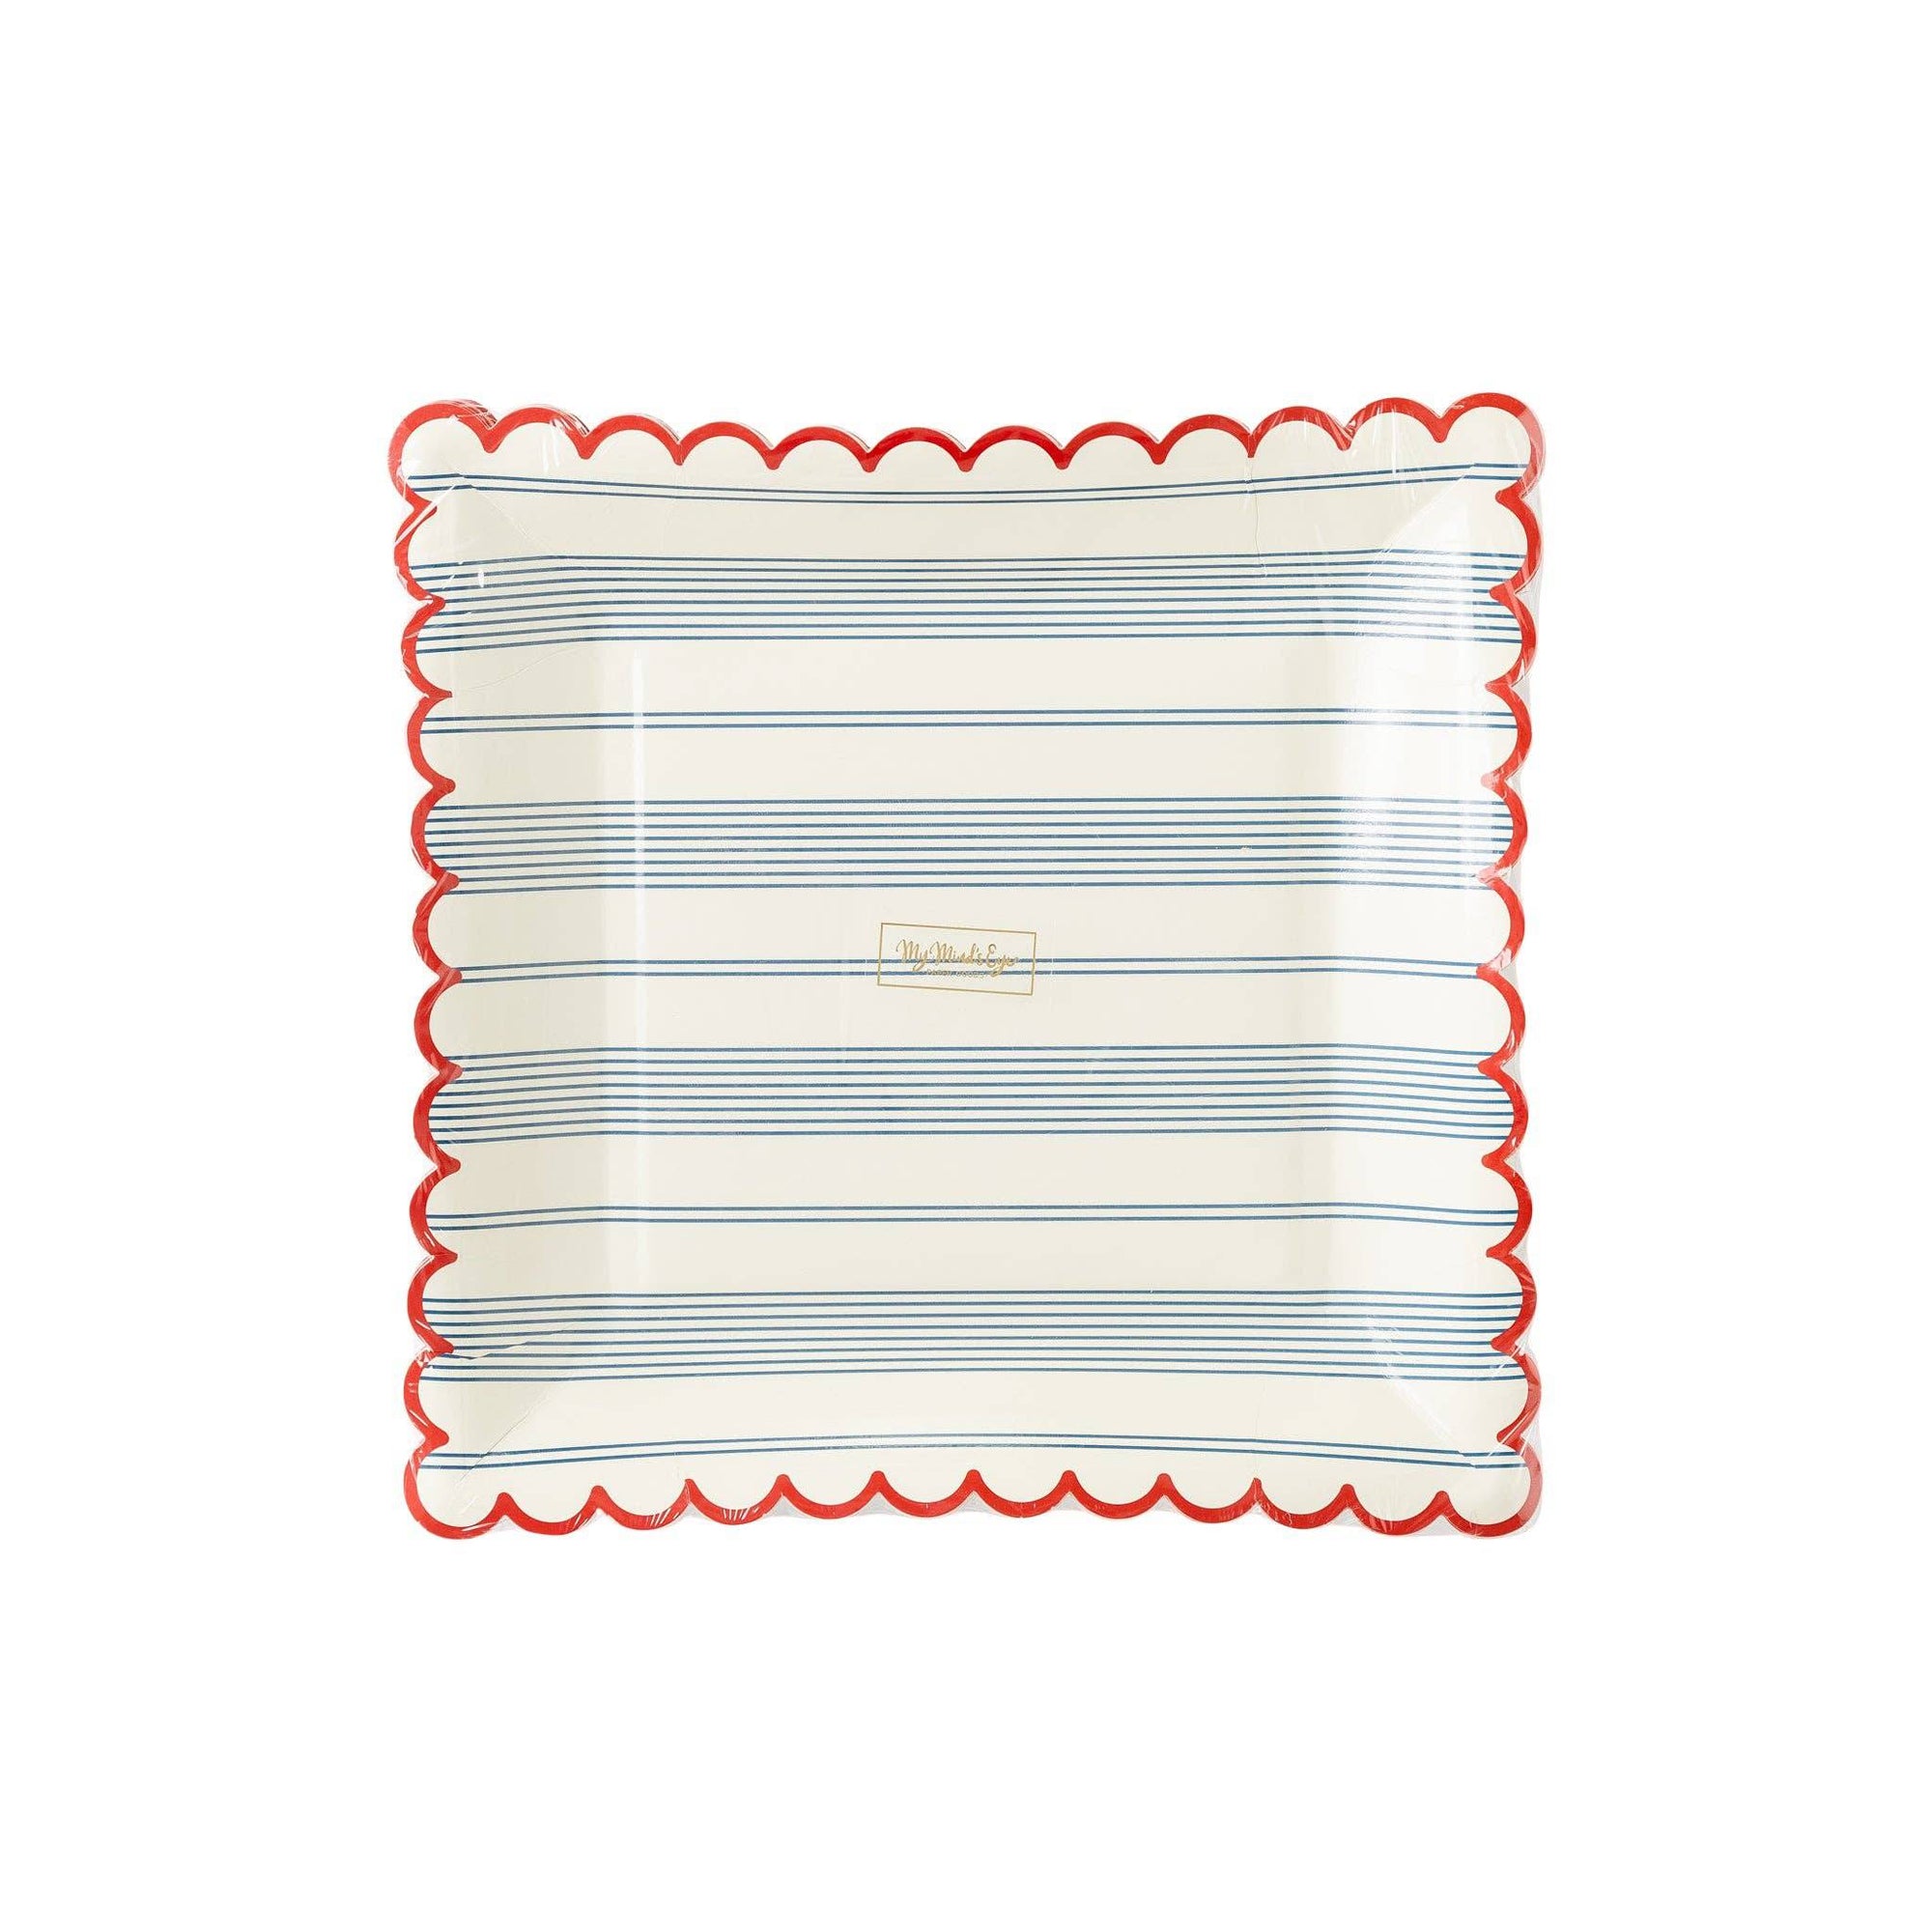 Striped Scallop Paper Plates - The Preppy Bunny